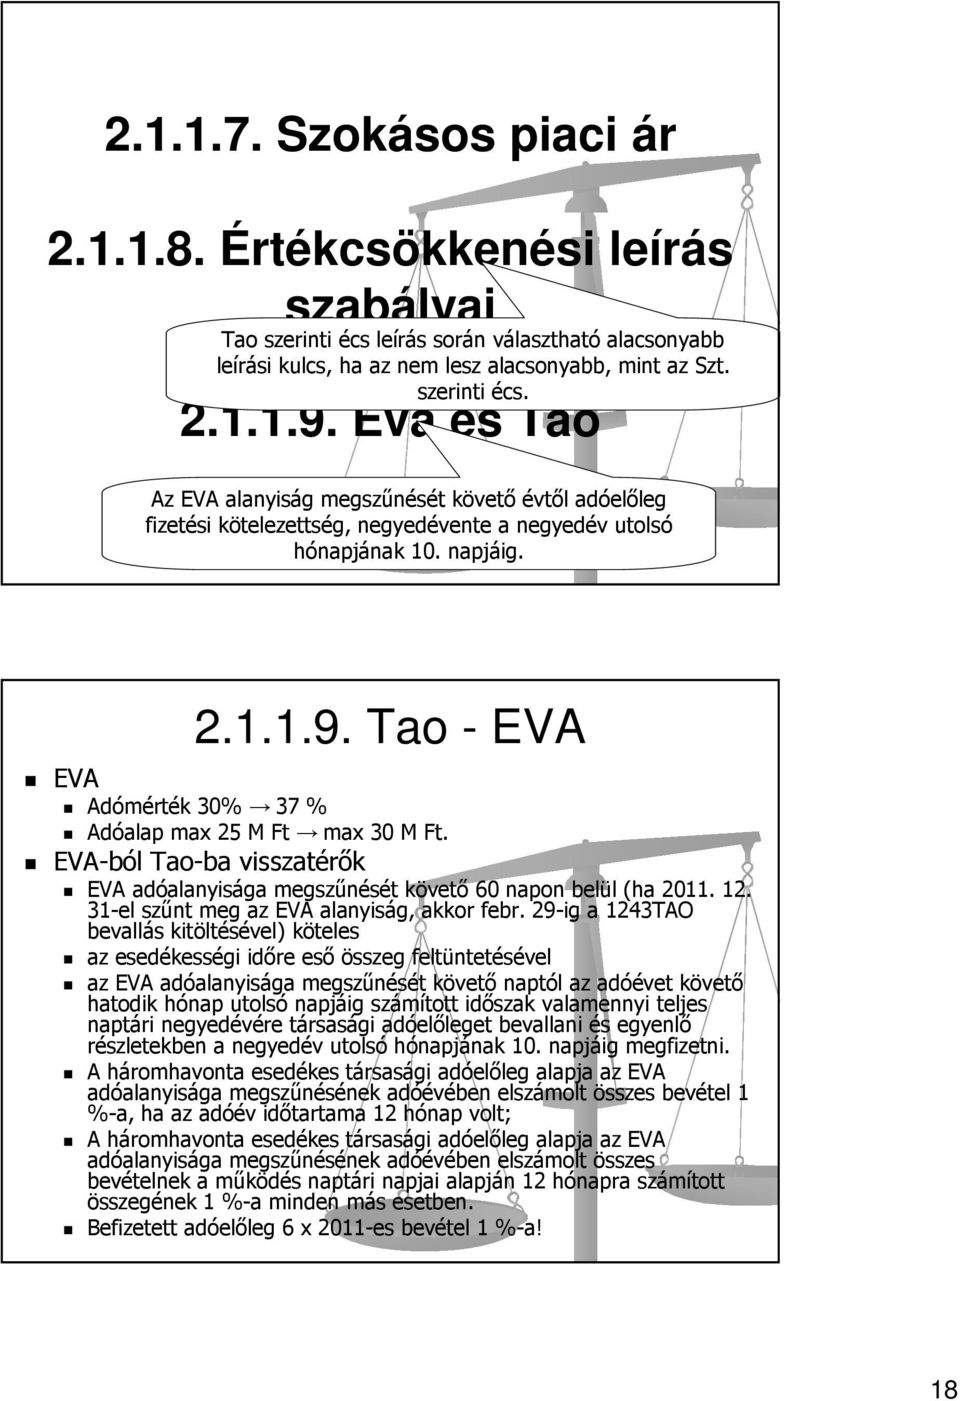 Tao - EVA Adómérték 30% 37 % Adóalap max 25 M Ft max 30 M Ft. EVA-ból Tao-ba visszatérők EVA adóalanyisága megszűnését követő 60 napon belül (ha 2011. 12. 31-el szűnt meg az EVA alanyiság, akkor febr.